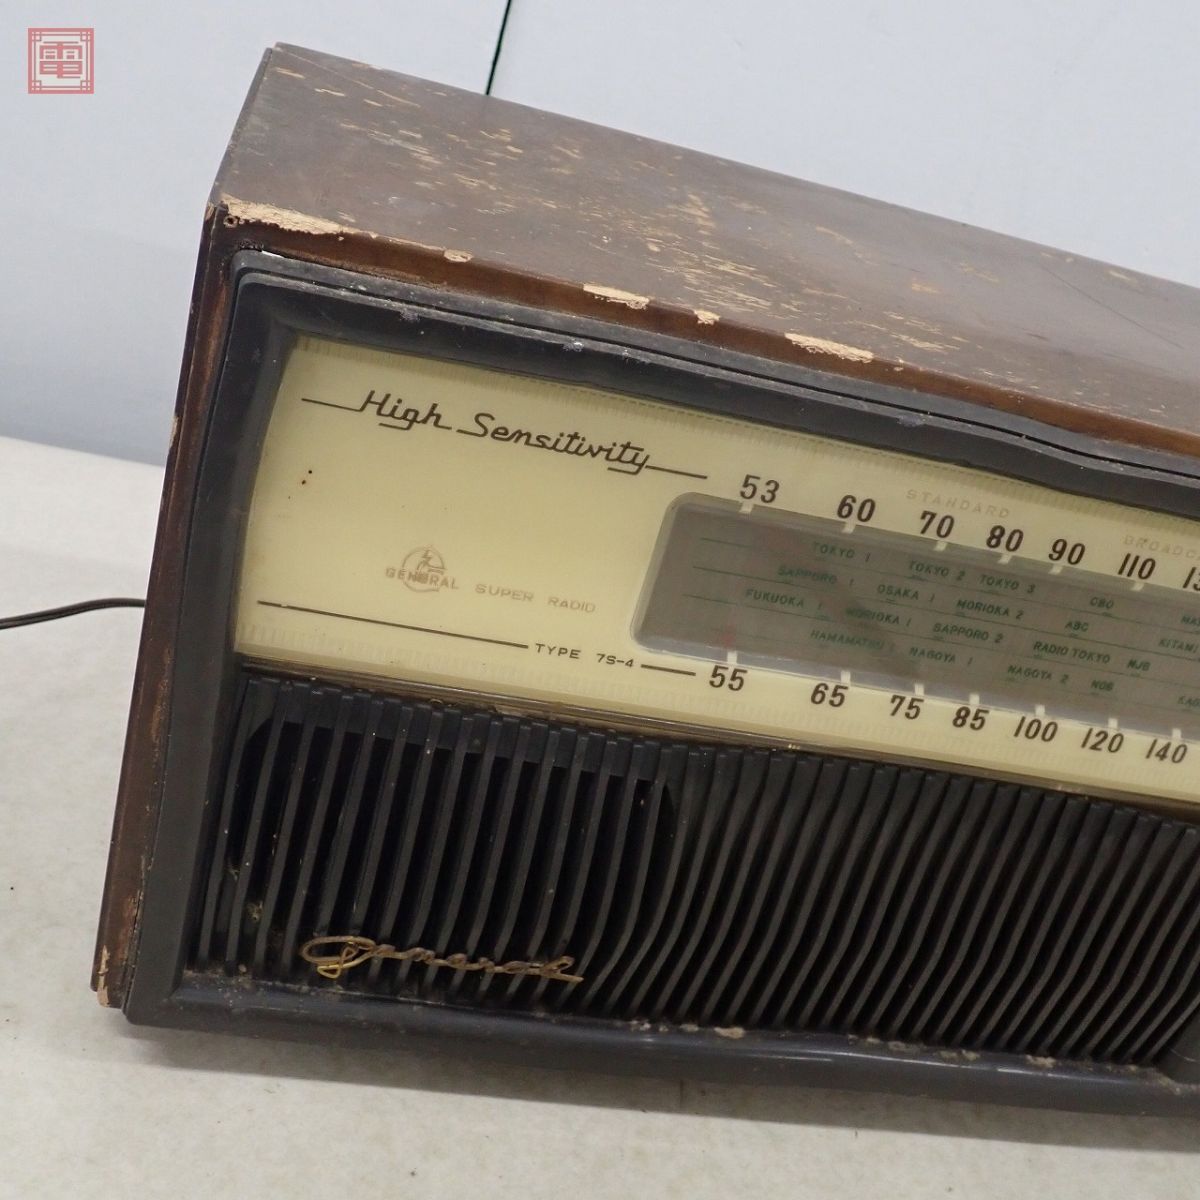 .. беспроводной 7S-4 вакуумная трубка радио zenelaru super радио GENERAL SUPER RADIO античный радио электризация только проверка Junk [40